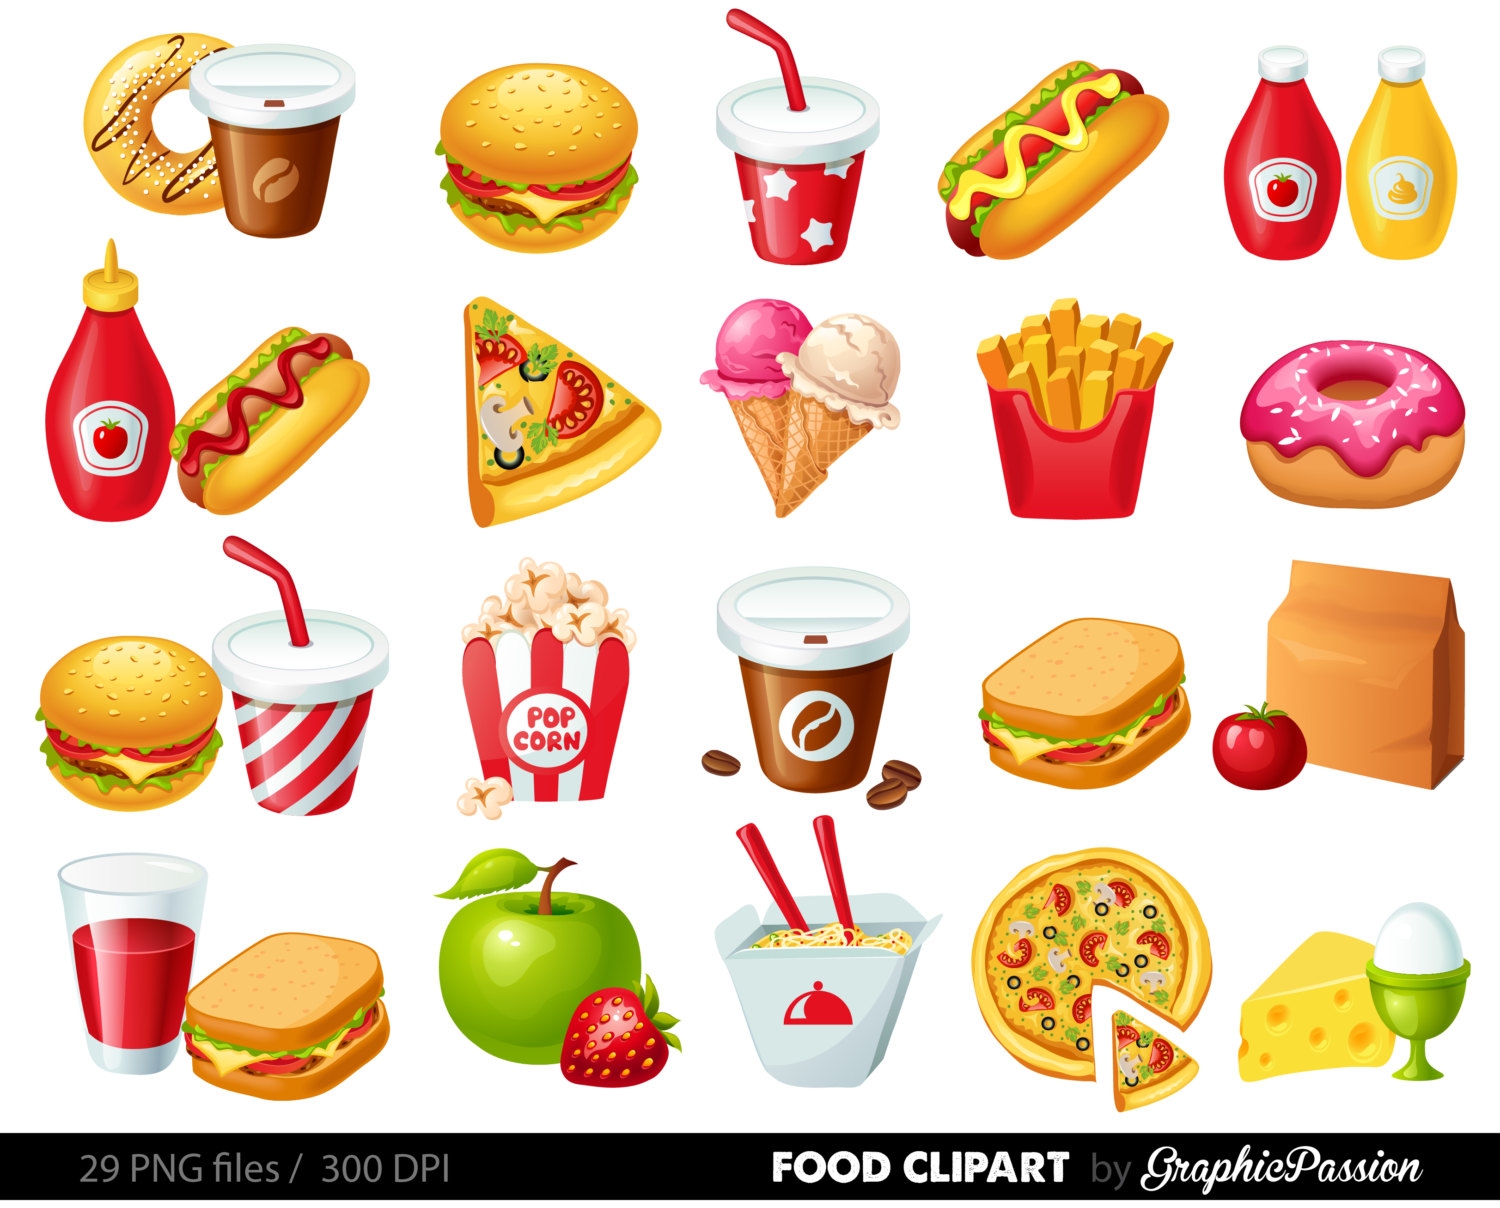 Food images clipart - Clipart - Food Clipart Images